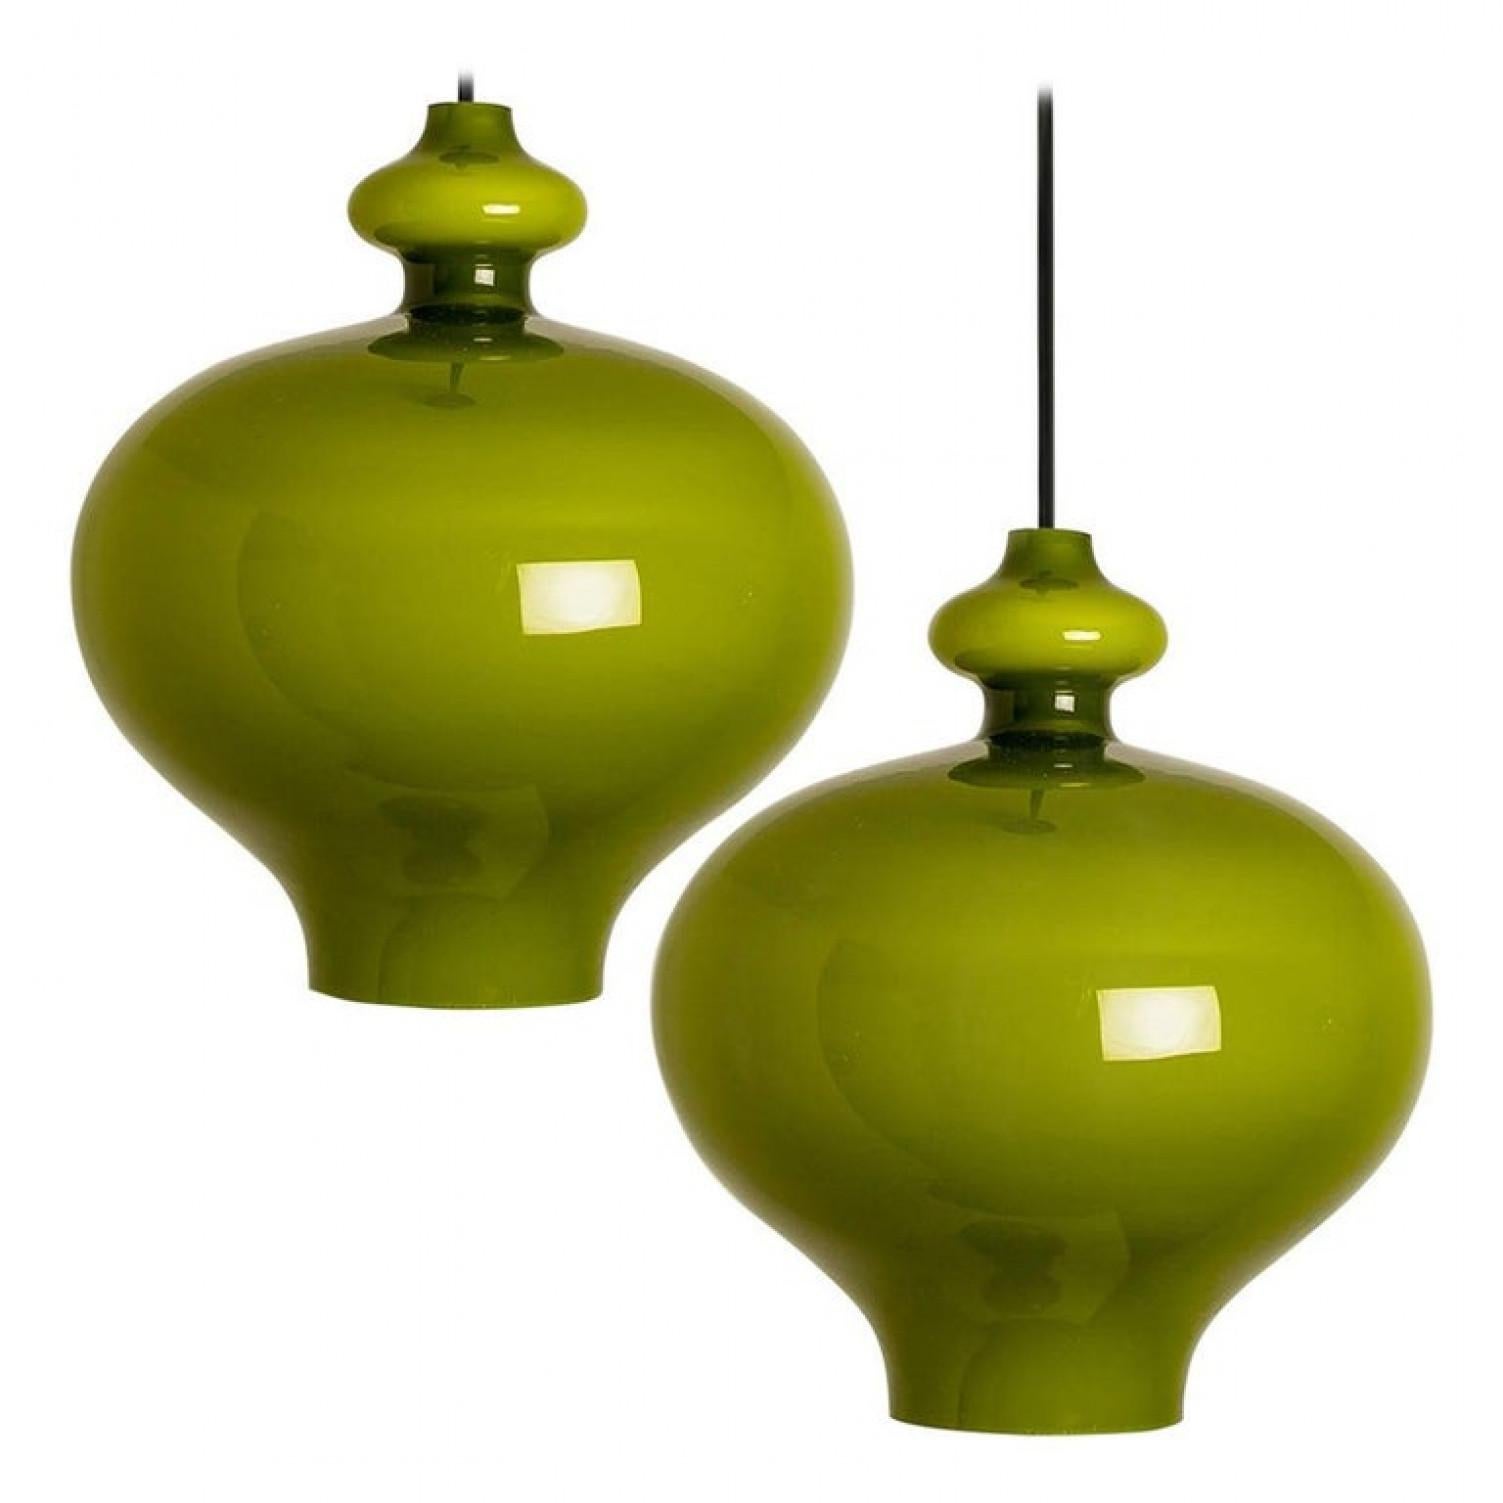 Lampe suspendue moderniste en verre opale de couleur vert olive. Conçue et réalisée par H.A. Jacobson pour Staff Leuchten, Allemagne, seconde moitié des années circa 1960.

Veuillez noter que le prix est celui de la paire. Nous pouvons fournir